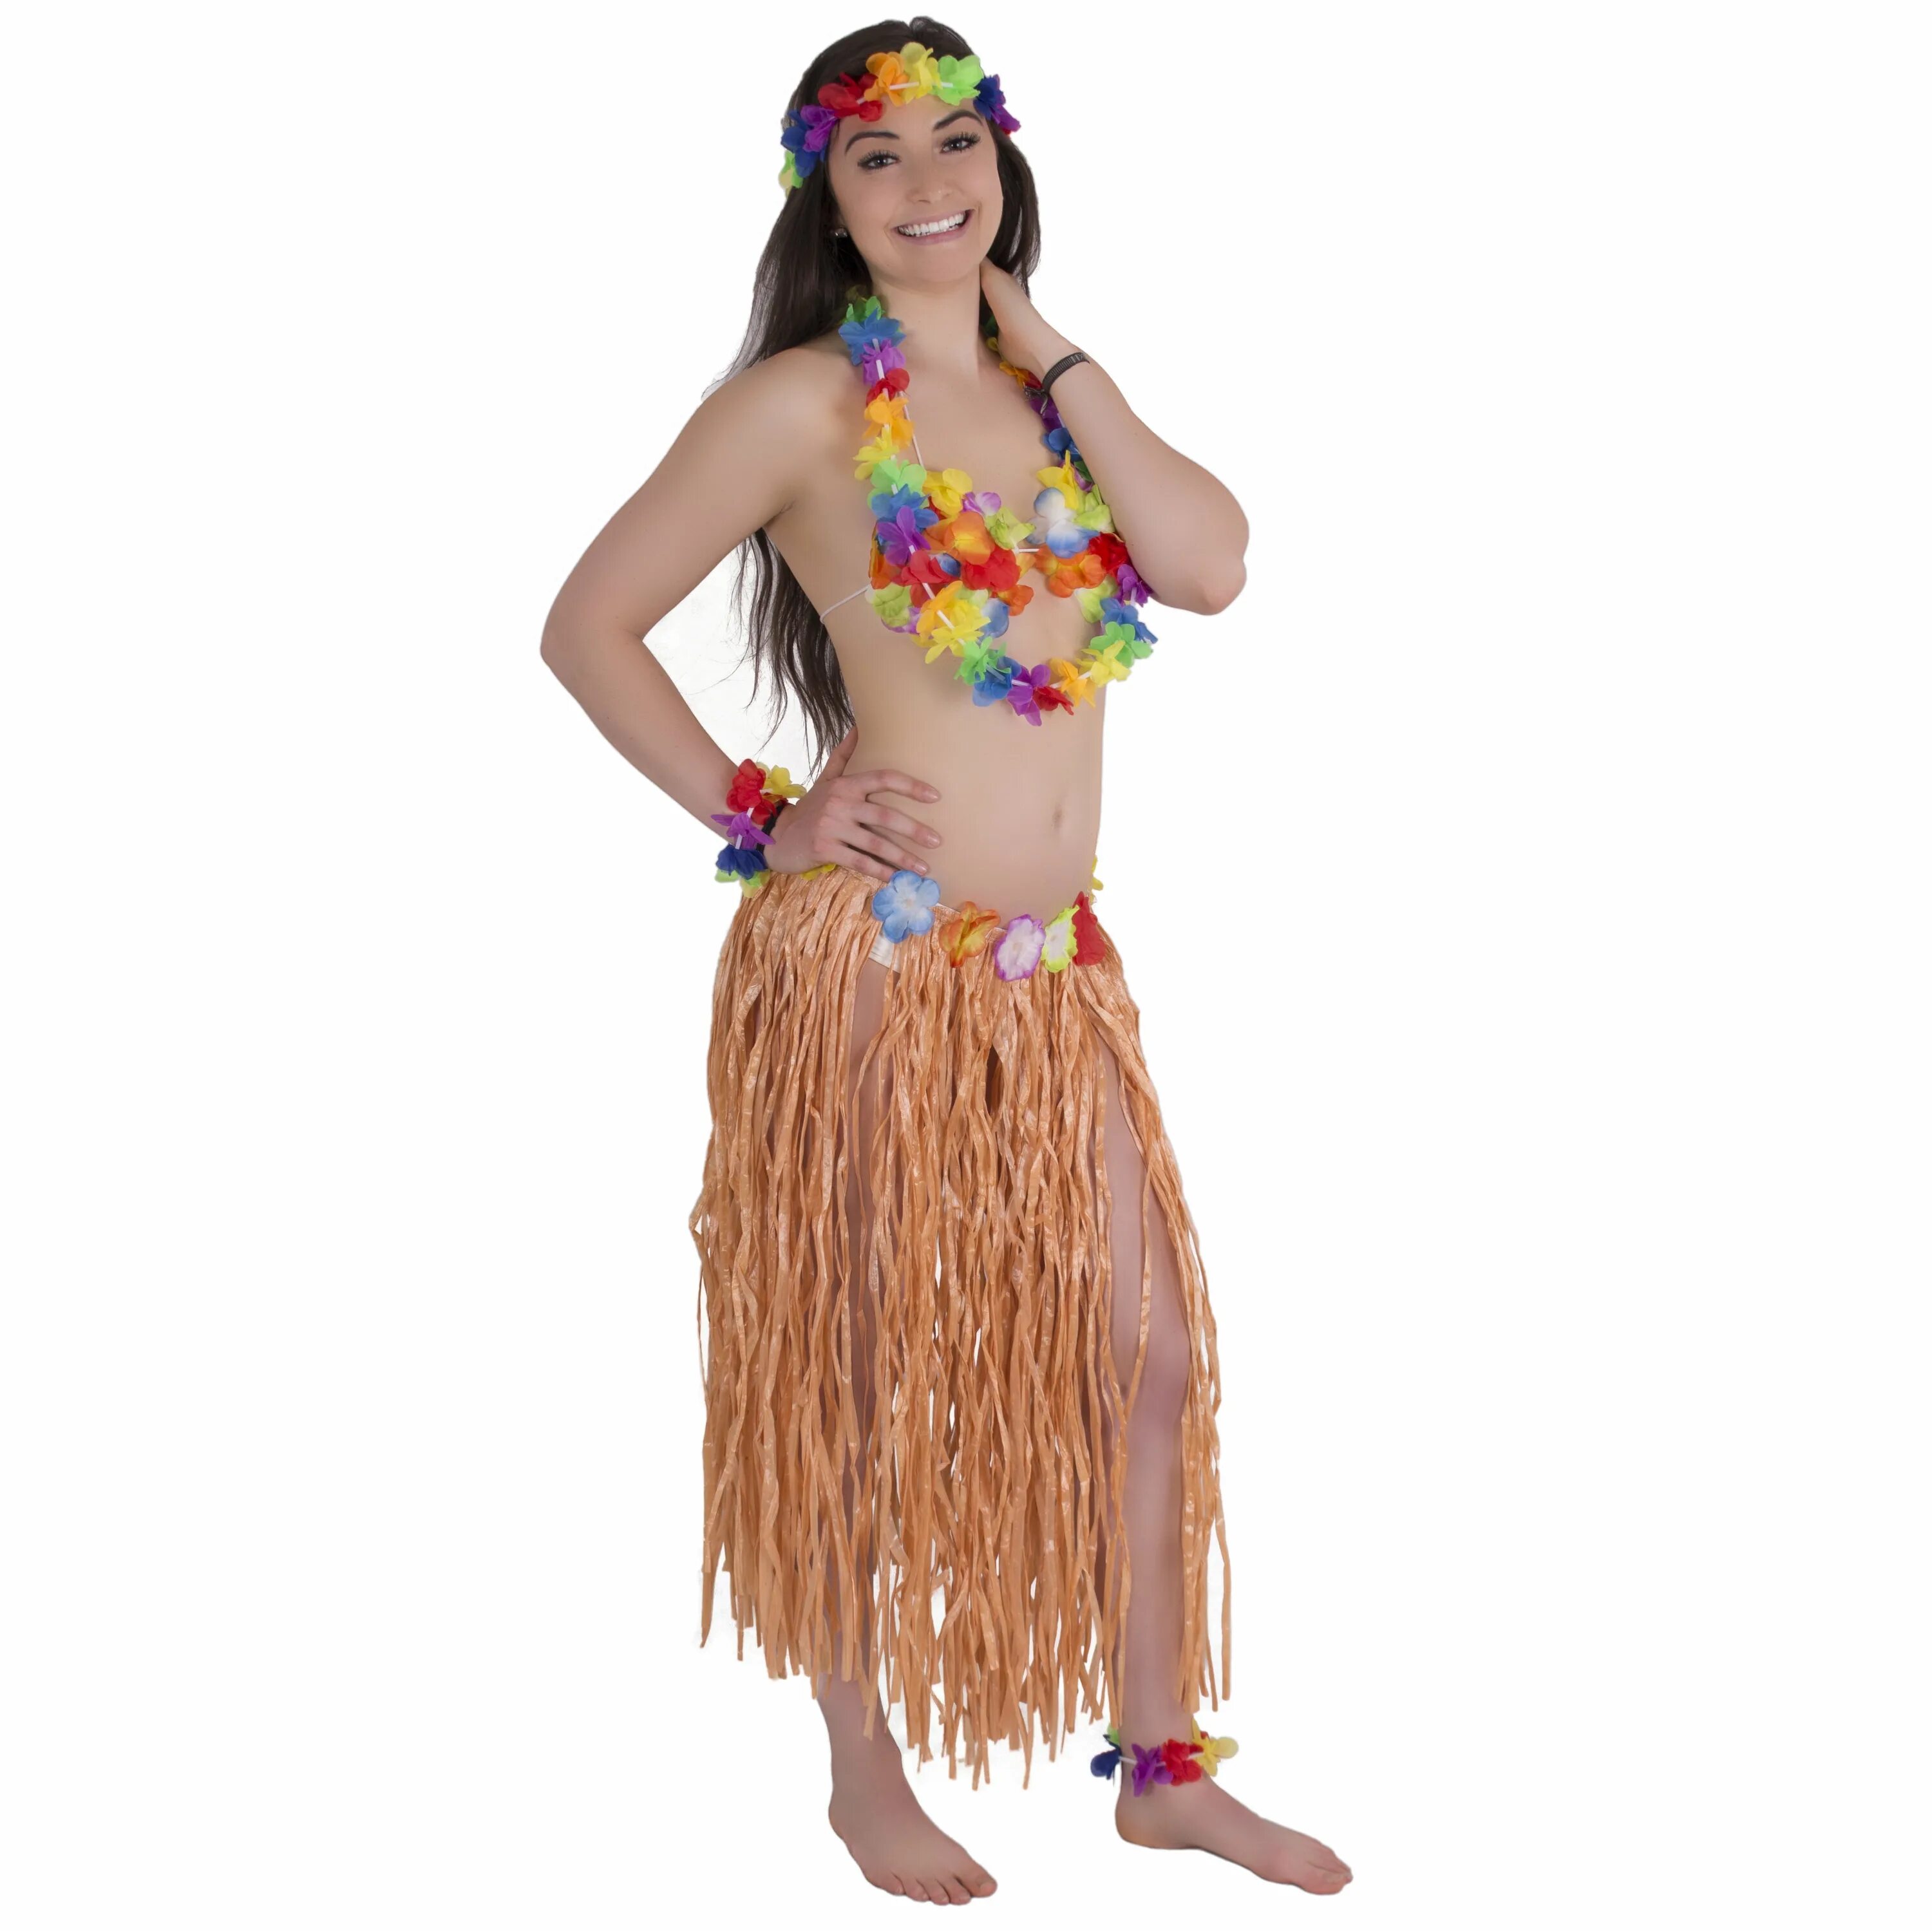 Луау. Гавайское платье. Хула костюм. Гавайская хула. Костюм Гавайи полные женщины.